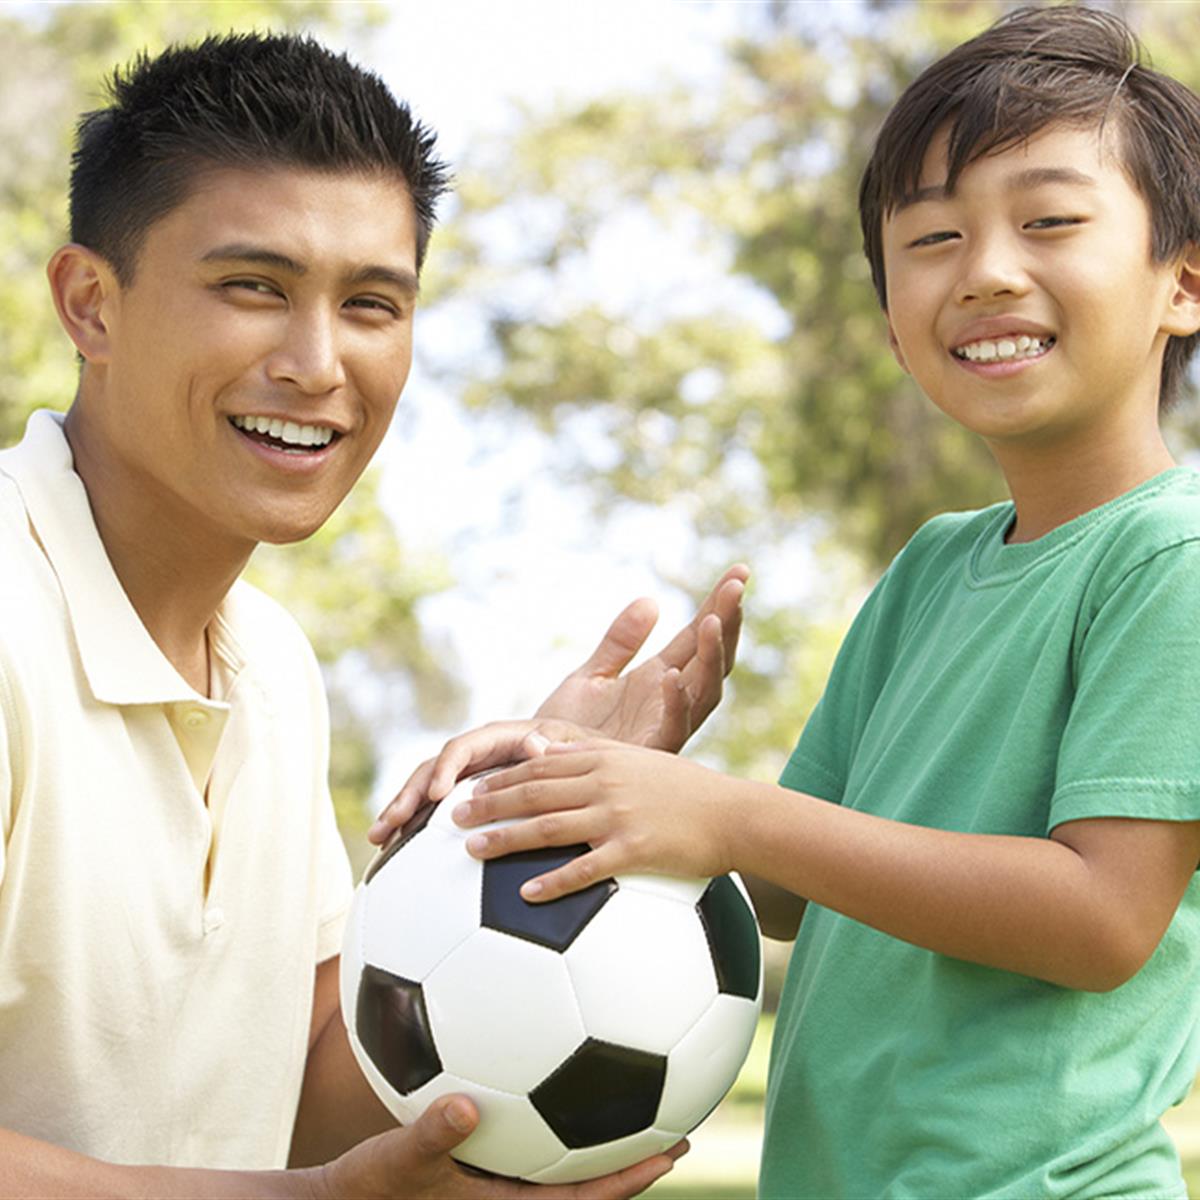 5 deportes excelentes para que comiencen niños y niñas